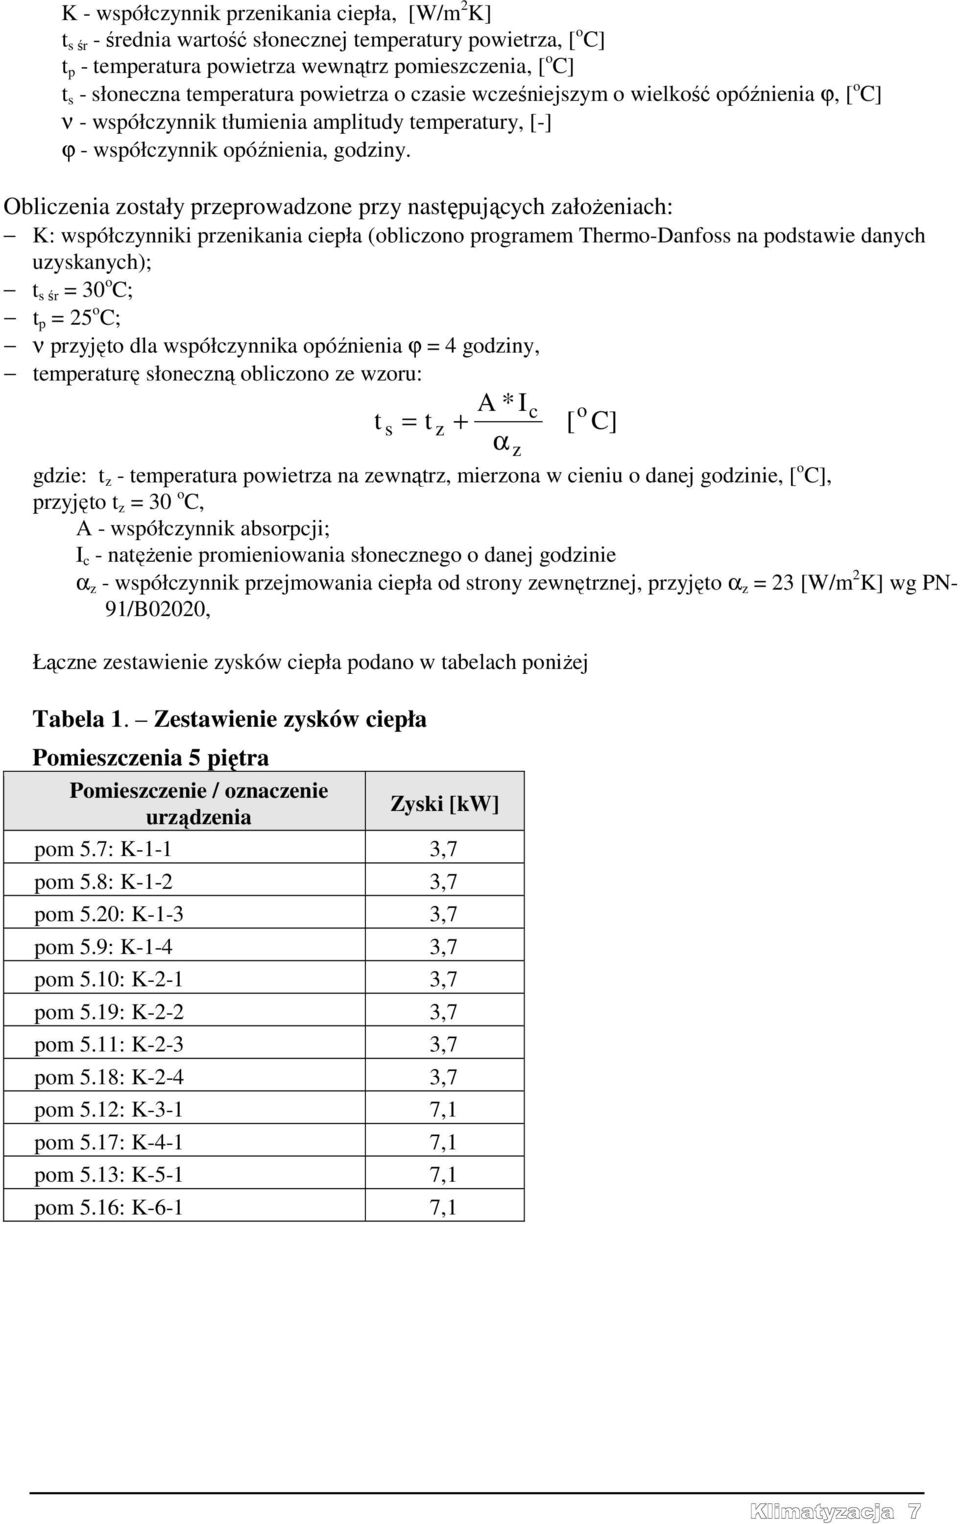 Obliczenia zostały przeprowadzone przy następujących założeniach: K: współczynniki przenikania ciepła (obliczono programem Thermo-Danfoss na podstawie danych uzyskanych); t s śr = 30 o C; t p = 25 o